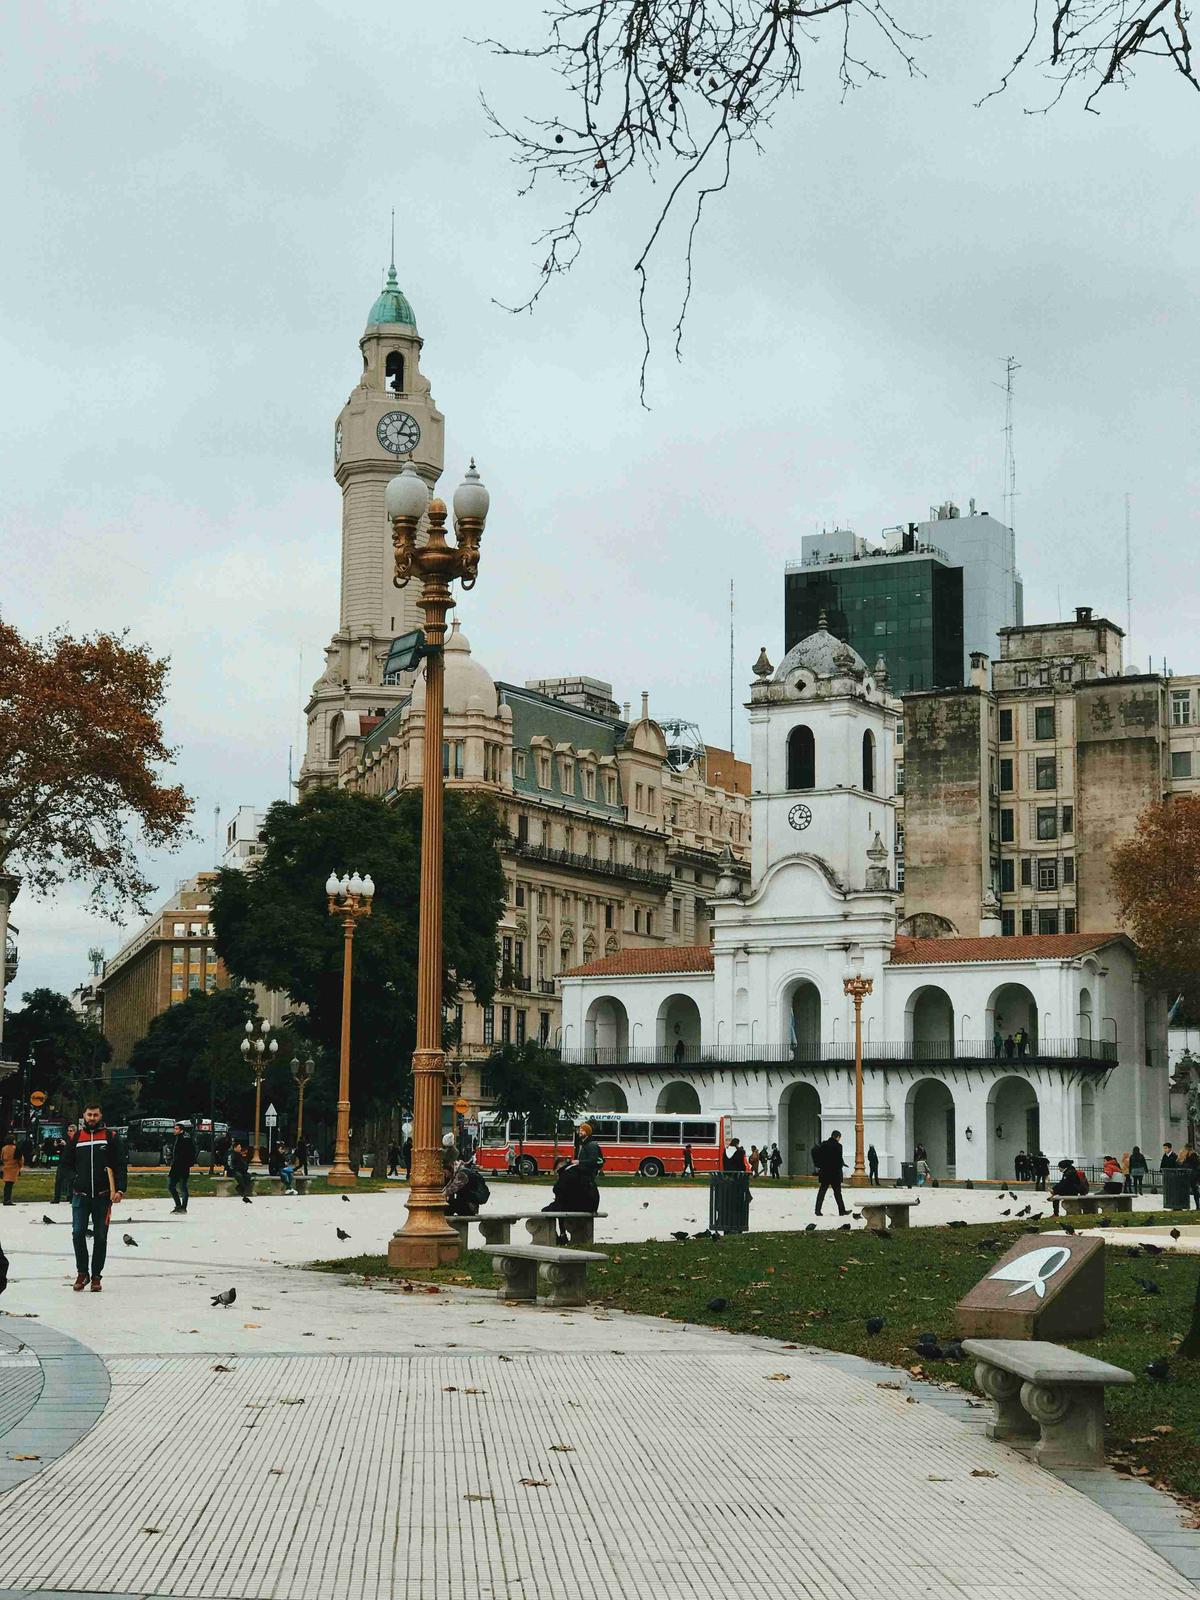 Giornata autunnale in piazza della città con la storica torre dell'orologio